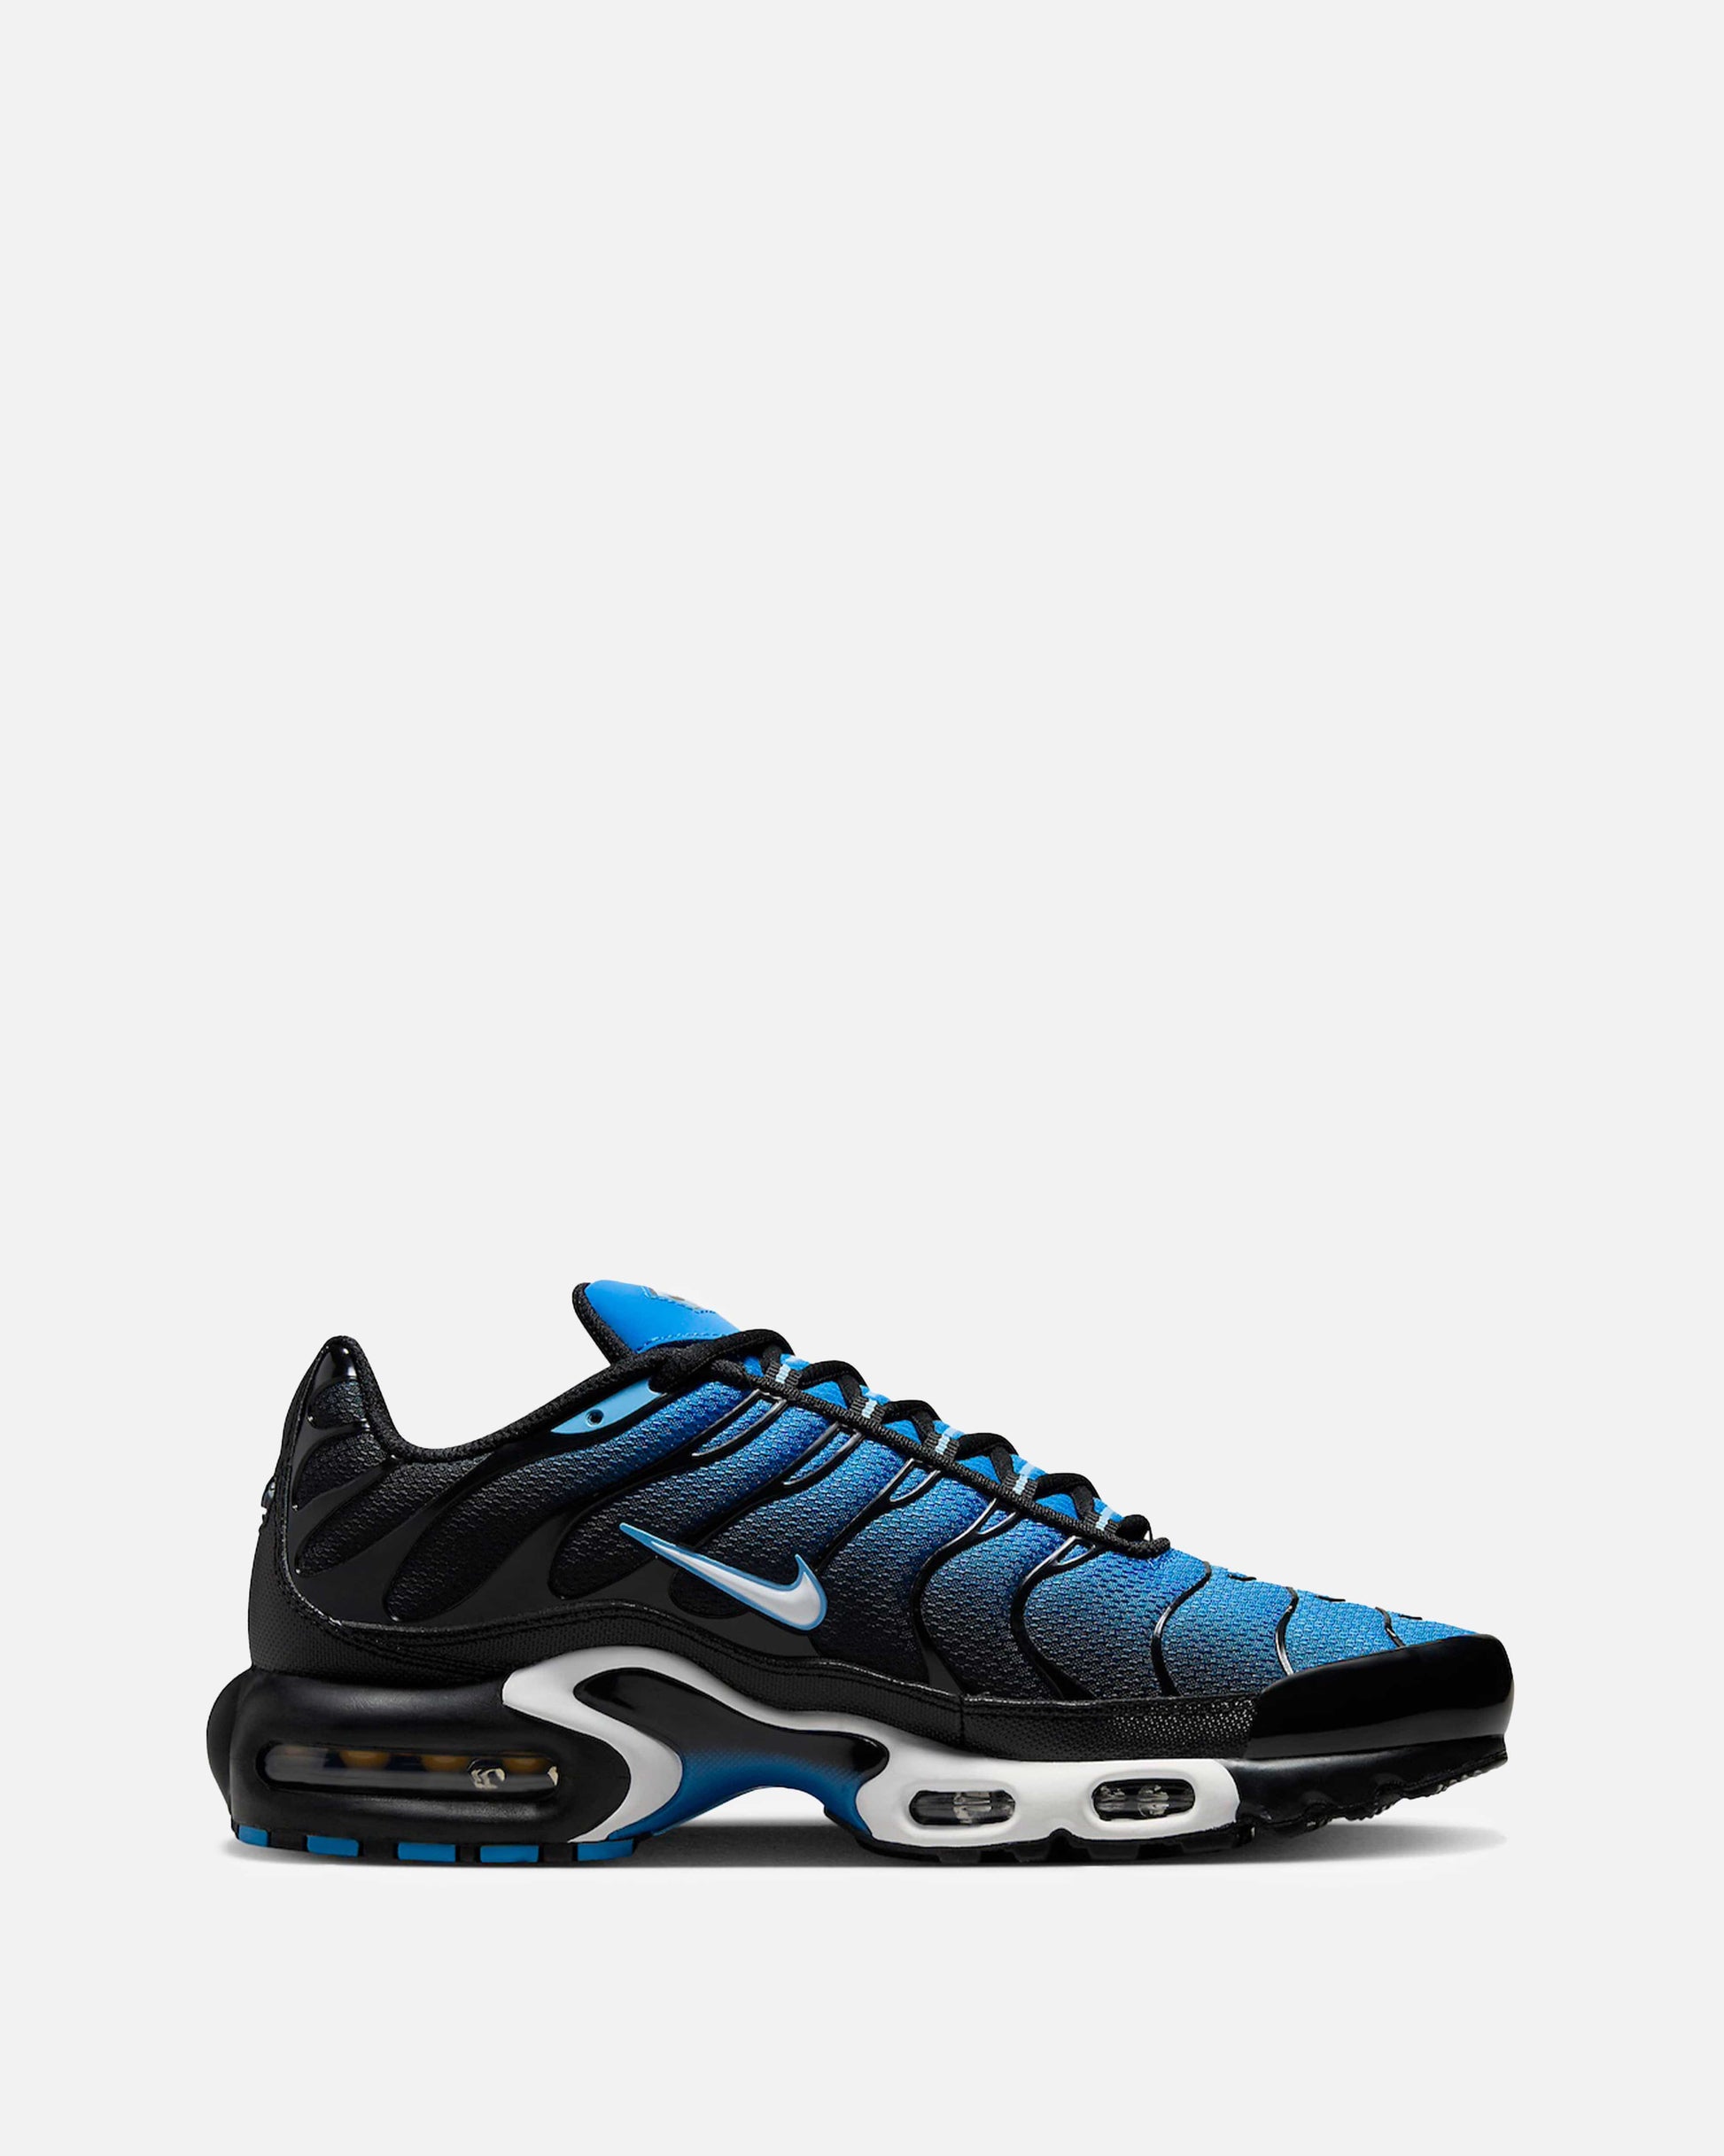 Nike Men's Sneakers Air Max Plus 'Aquarius Blue'